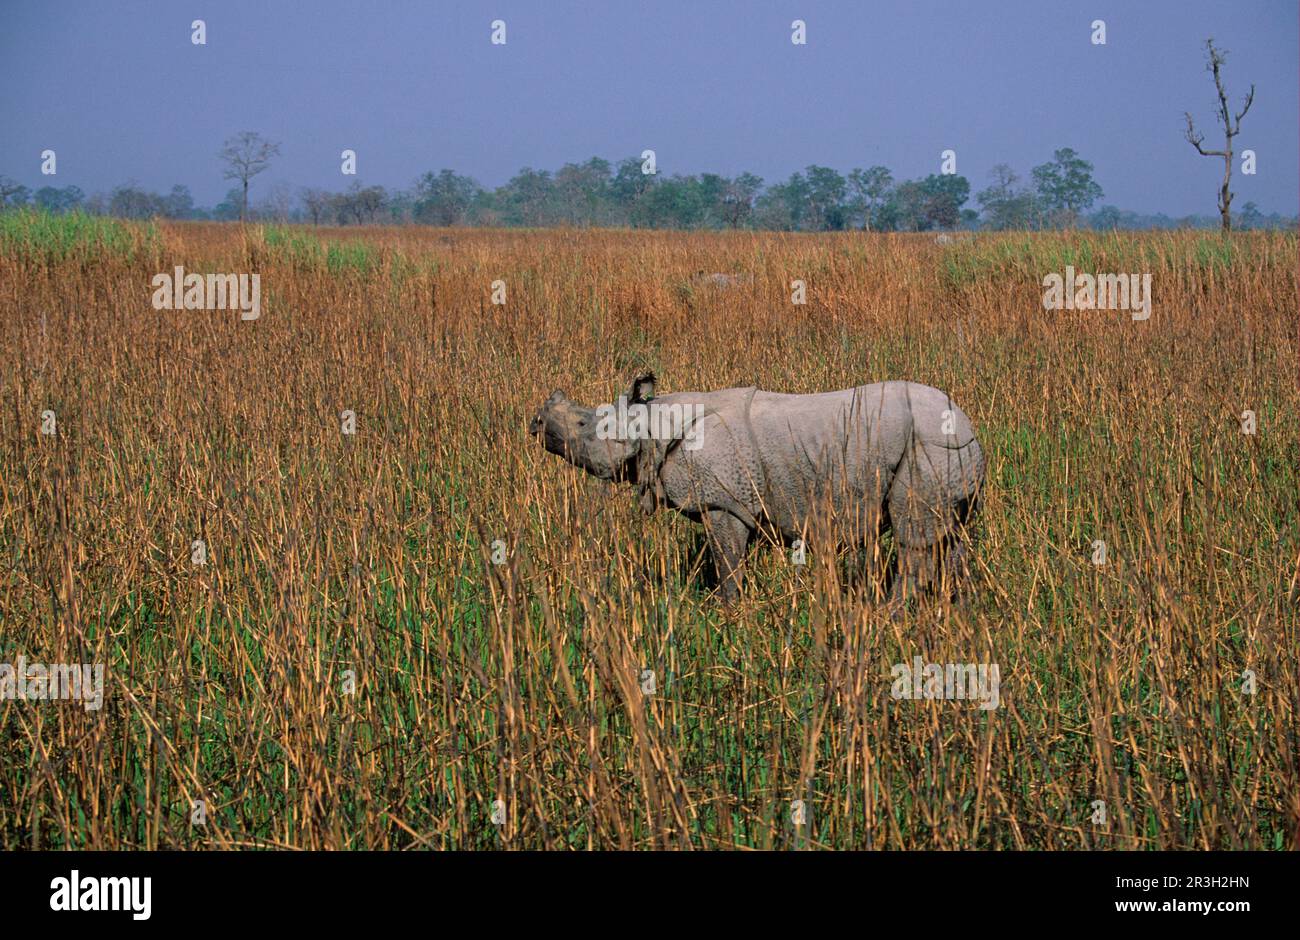 Rhinocéros blindés (Rhinoceros unicornis), ongulés, rhinocéros, rhinocéros, mammifères, Animaux, ongulés à bout impair, rhinocéros-indiens à cornes uniques Banque D'Images